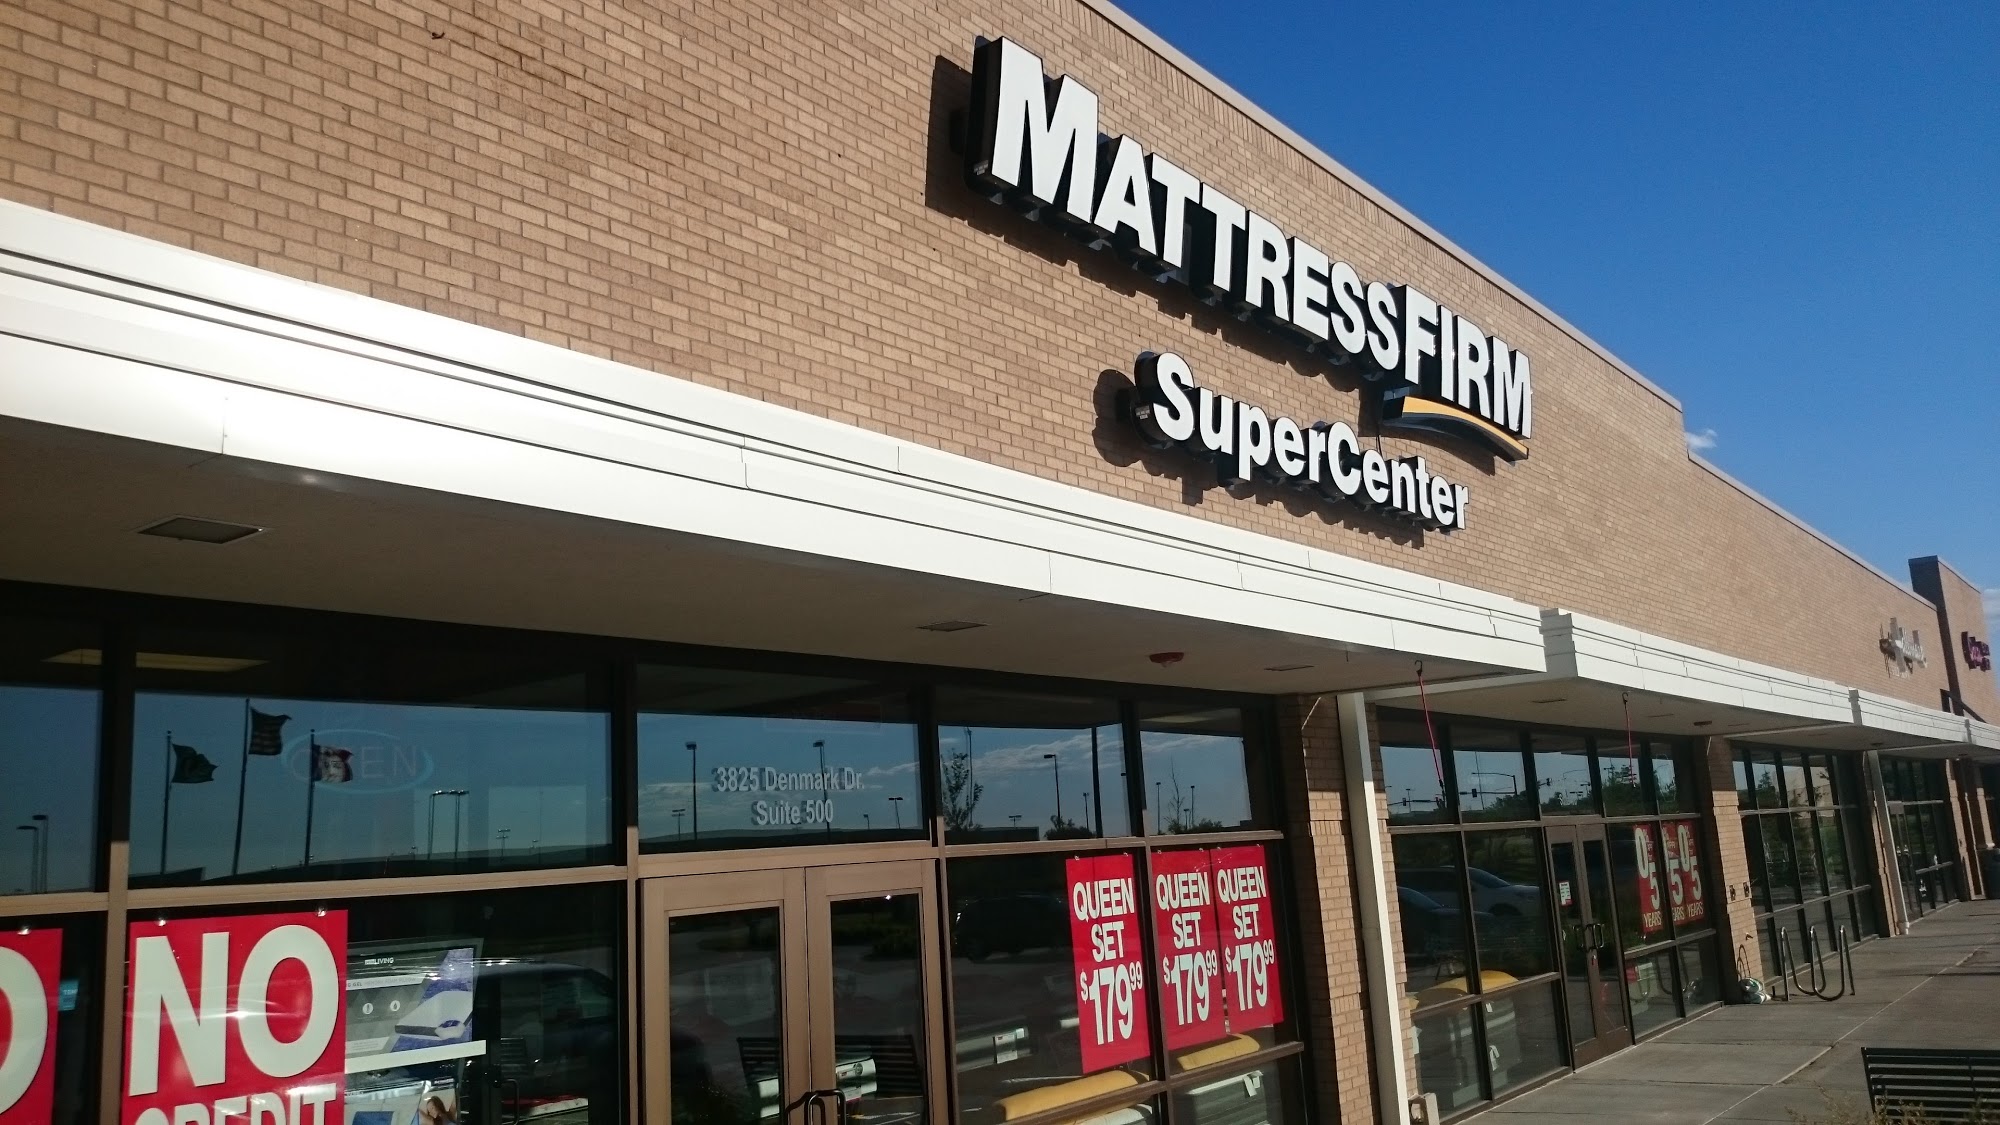 Mattress Firm Metro Crossing Supercenter